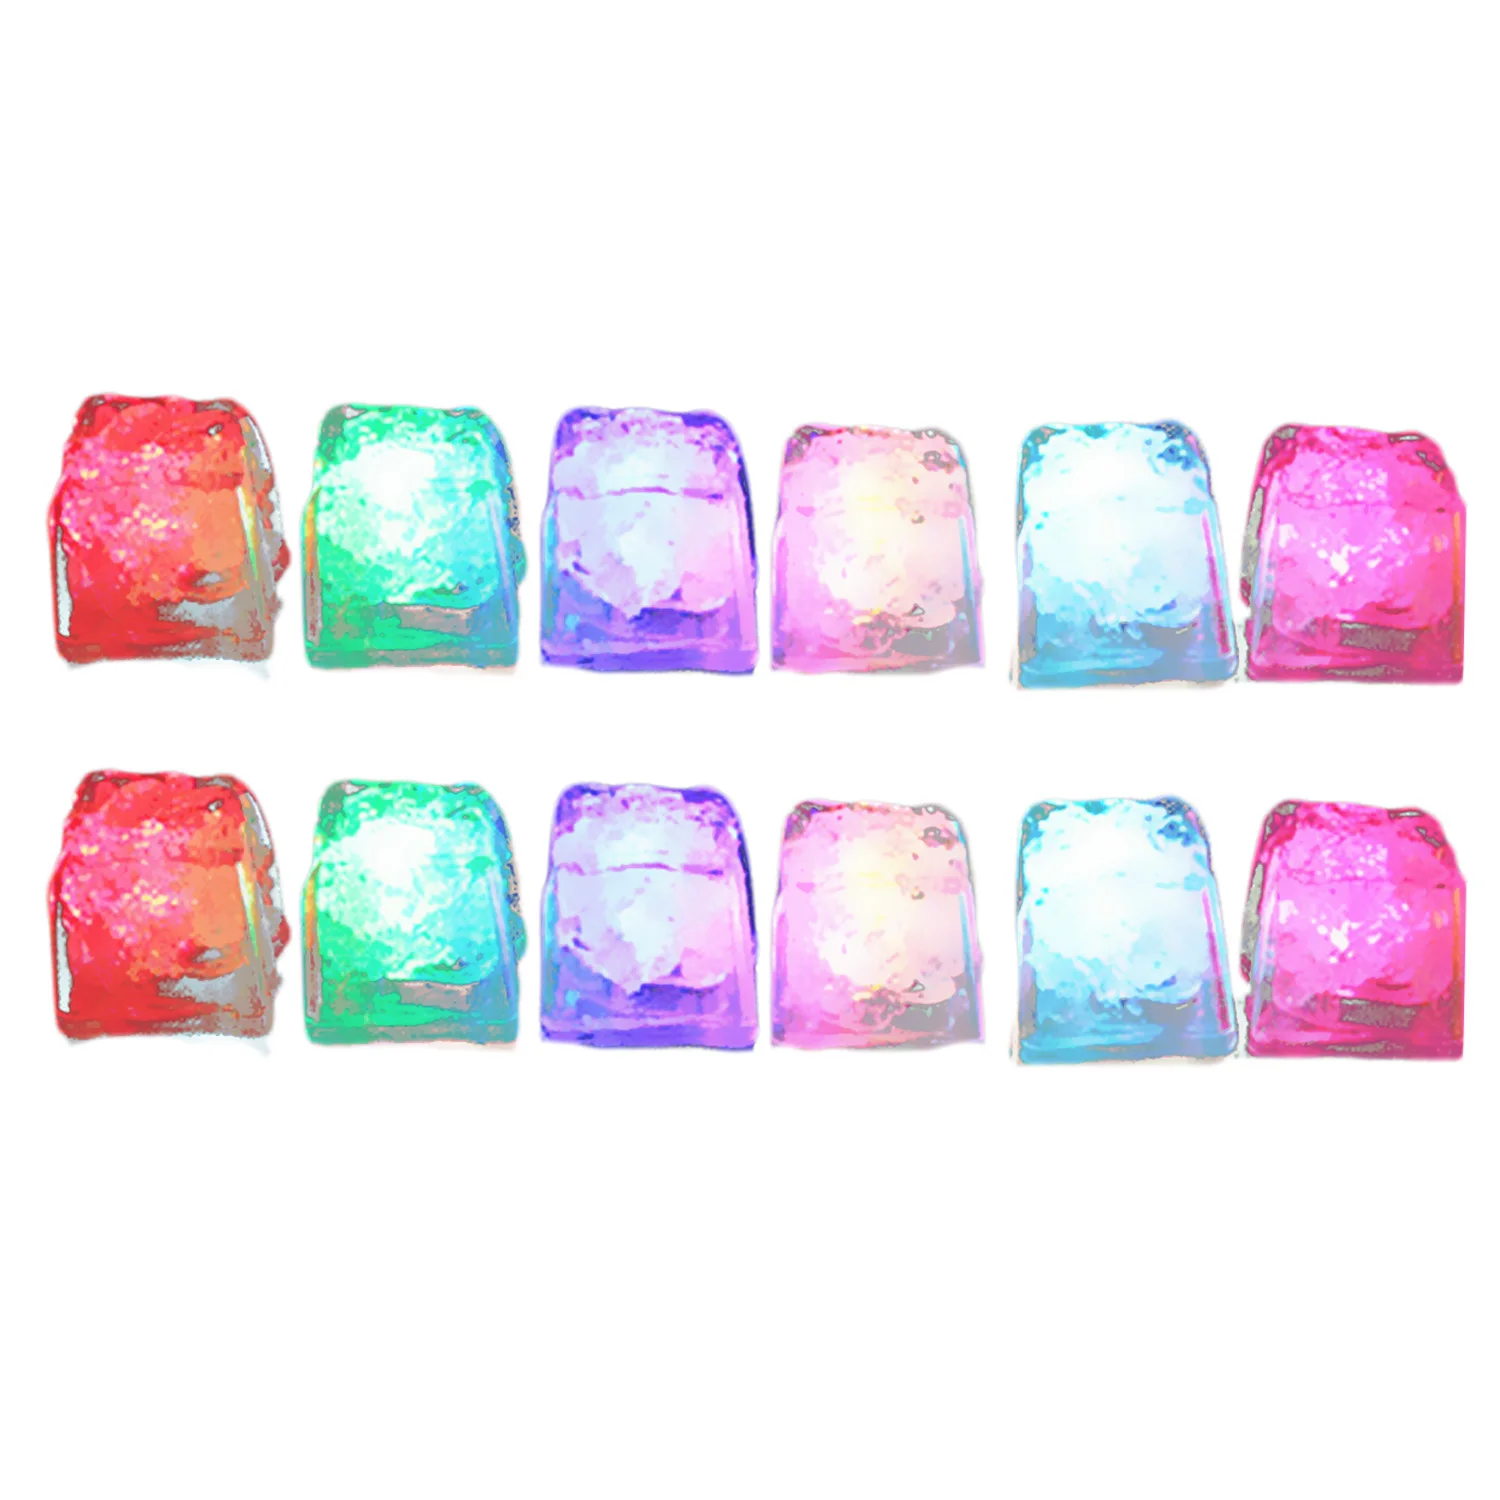 12 шт. цветной светодиодный кубики льда светящиеся кубики льда медленный мигающий меняющий цвет кубики льда Свадебная вечеринка фестиваль Декор Игрушка